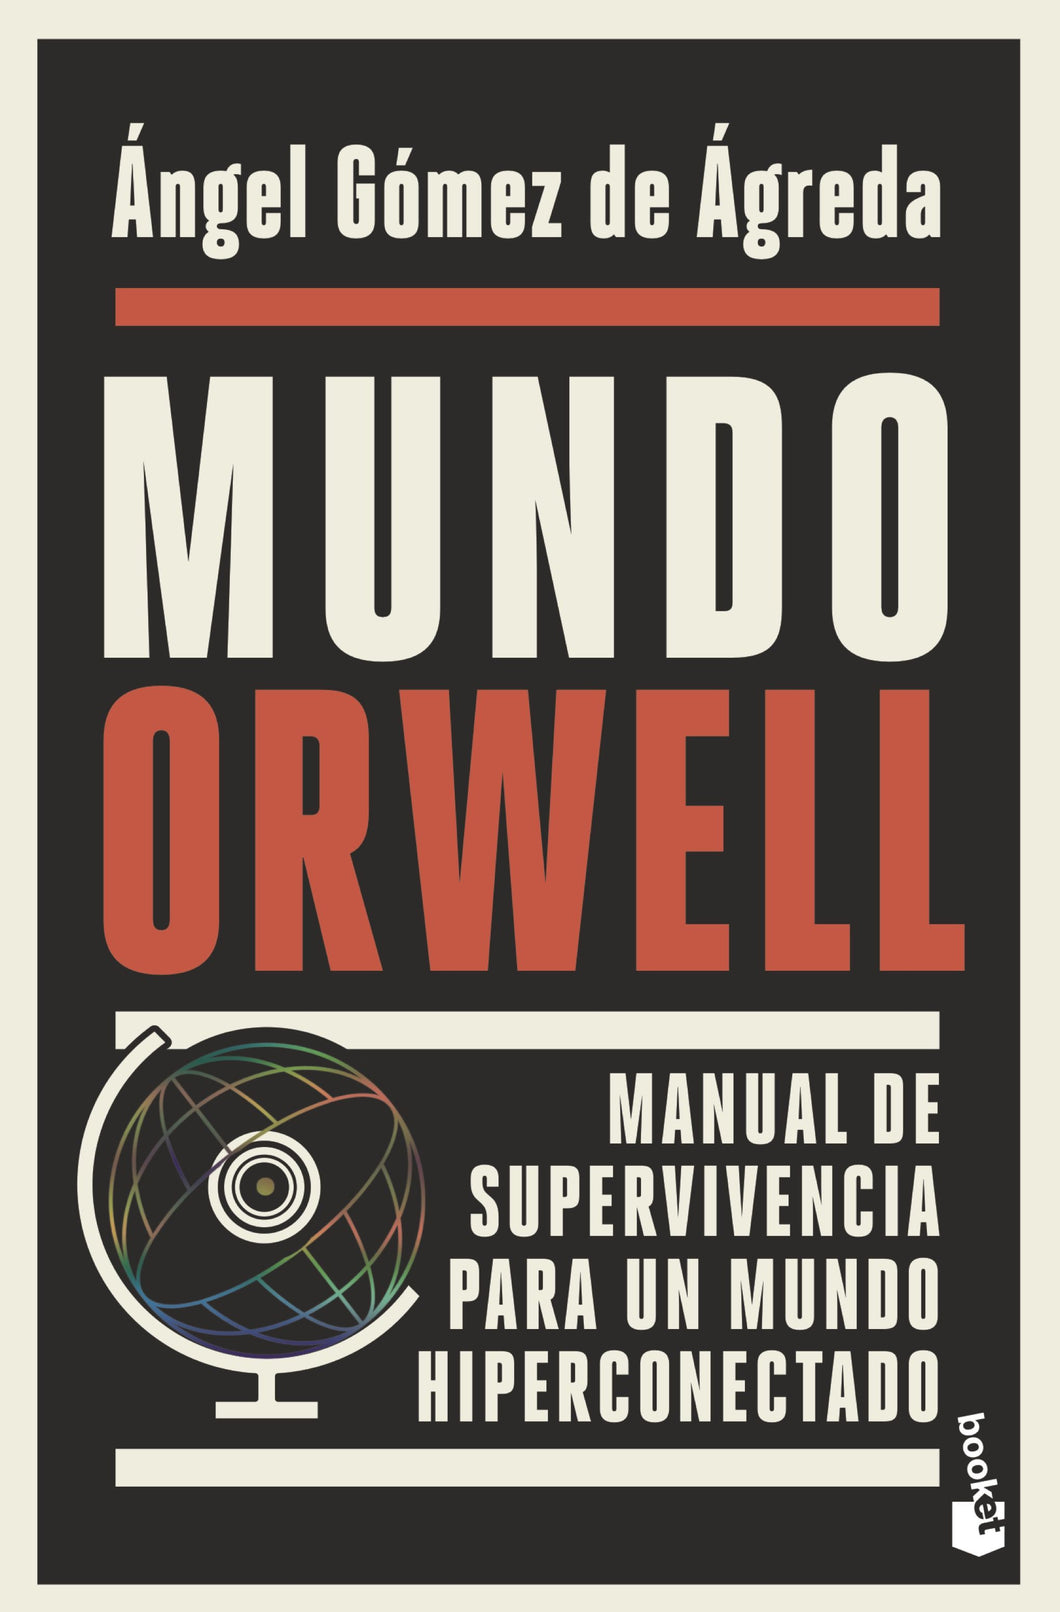 MUNDO ORWELL: MANUAL DE SUPERVIVENCIA PARA UN MUNDO HIPERCONECTADO - Ángel Gómez de Ágreda